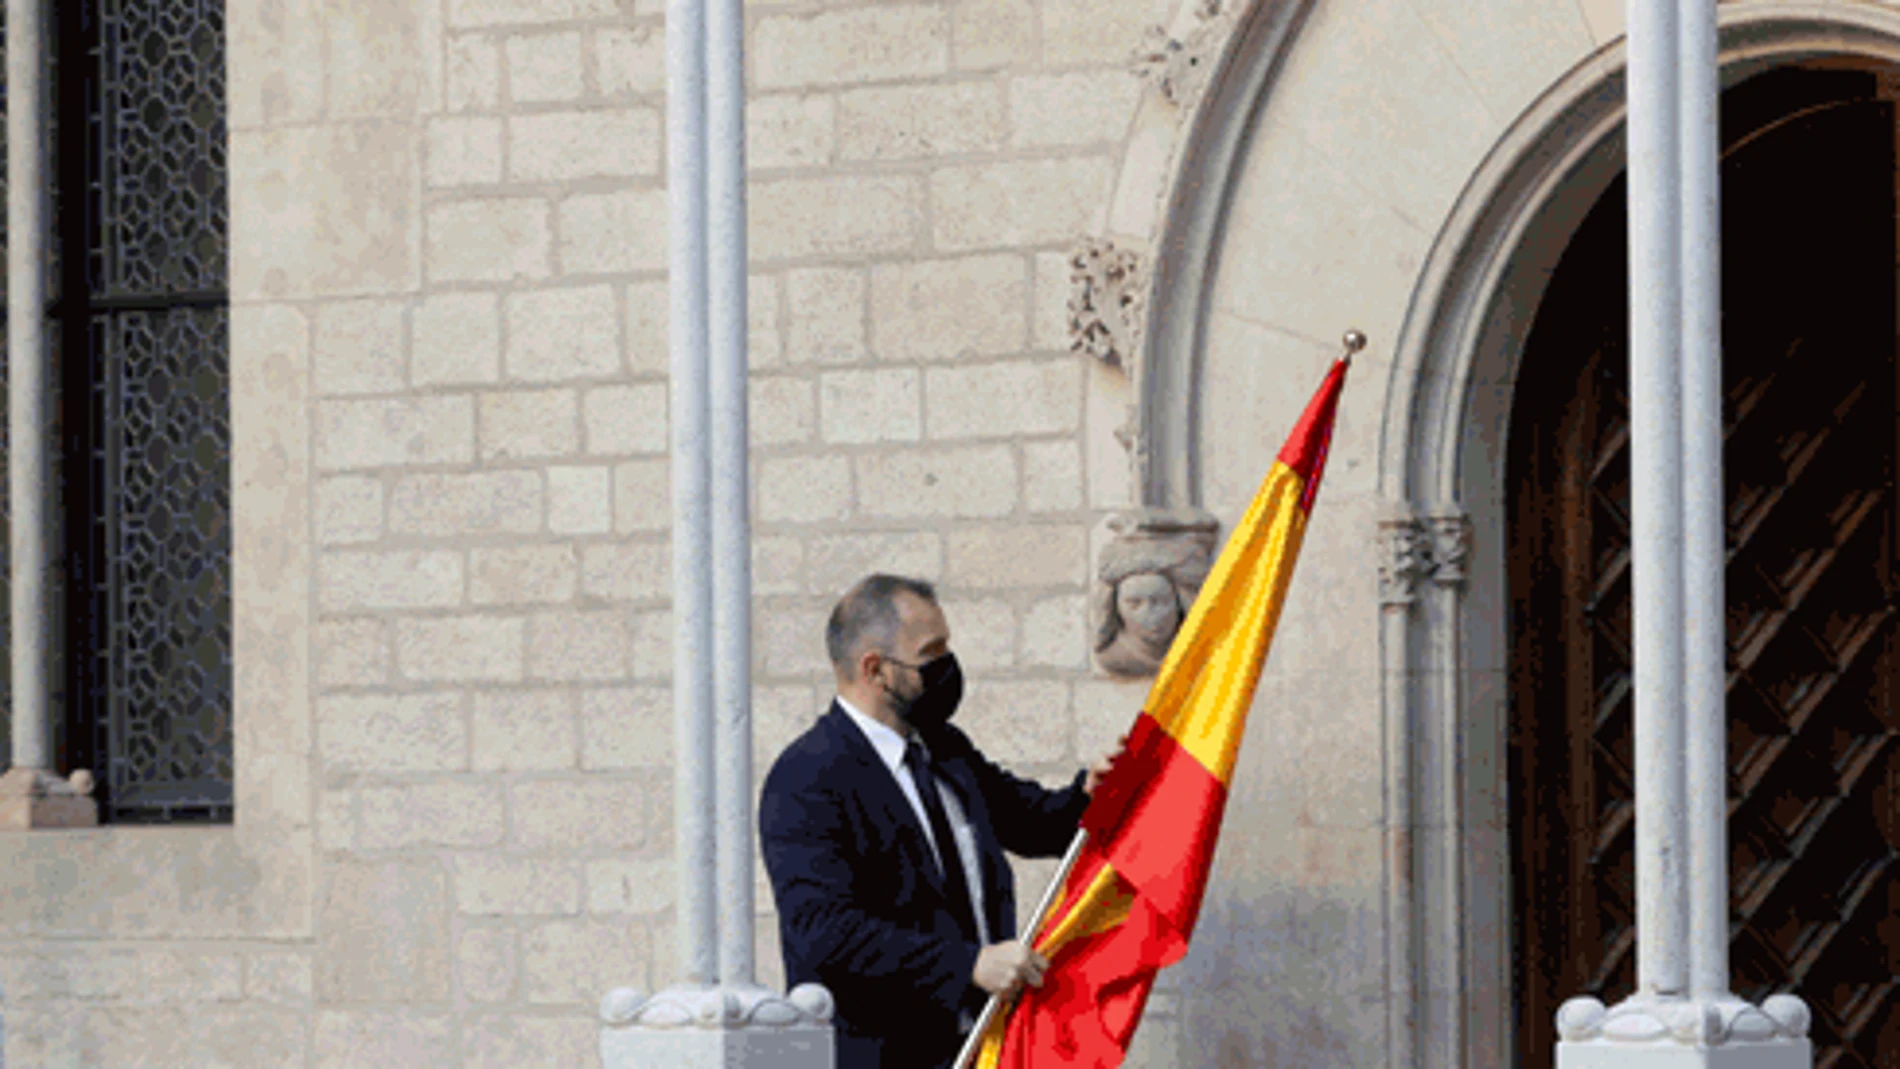 Al retirar la bandera de España, que estaba junto a la catalana cuando ha comparecido Sánchez, se ha quedado solo la “senyera” detrás de Aragonès.